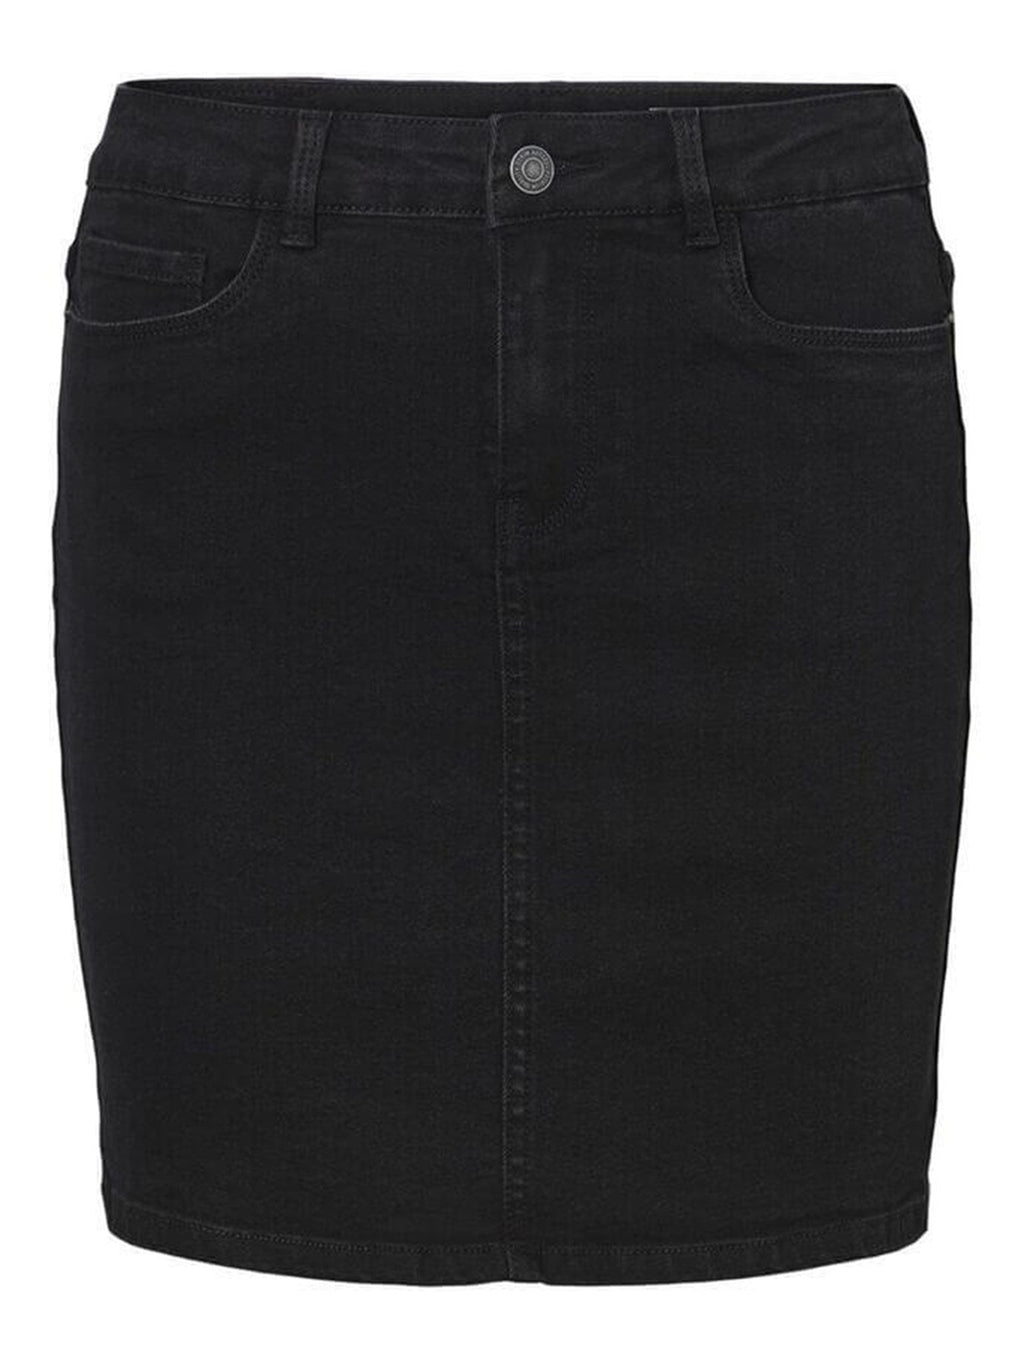 Horúca sukňa - čierna džínsovina